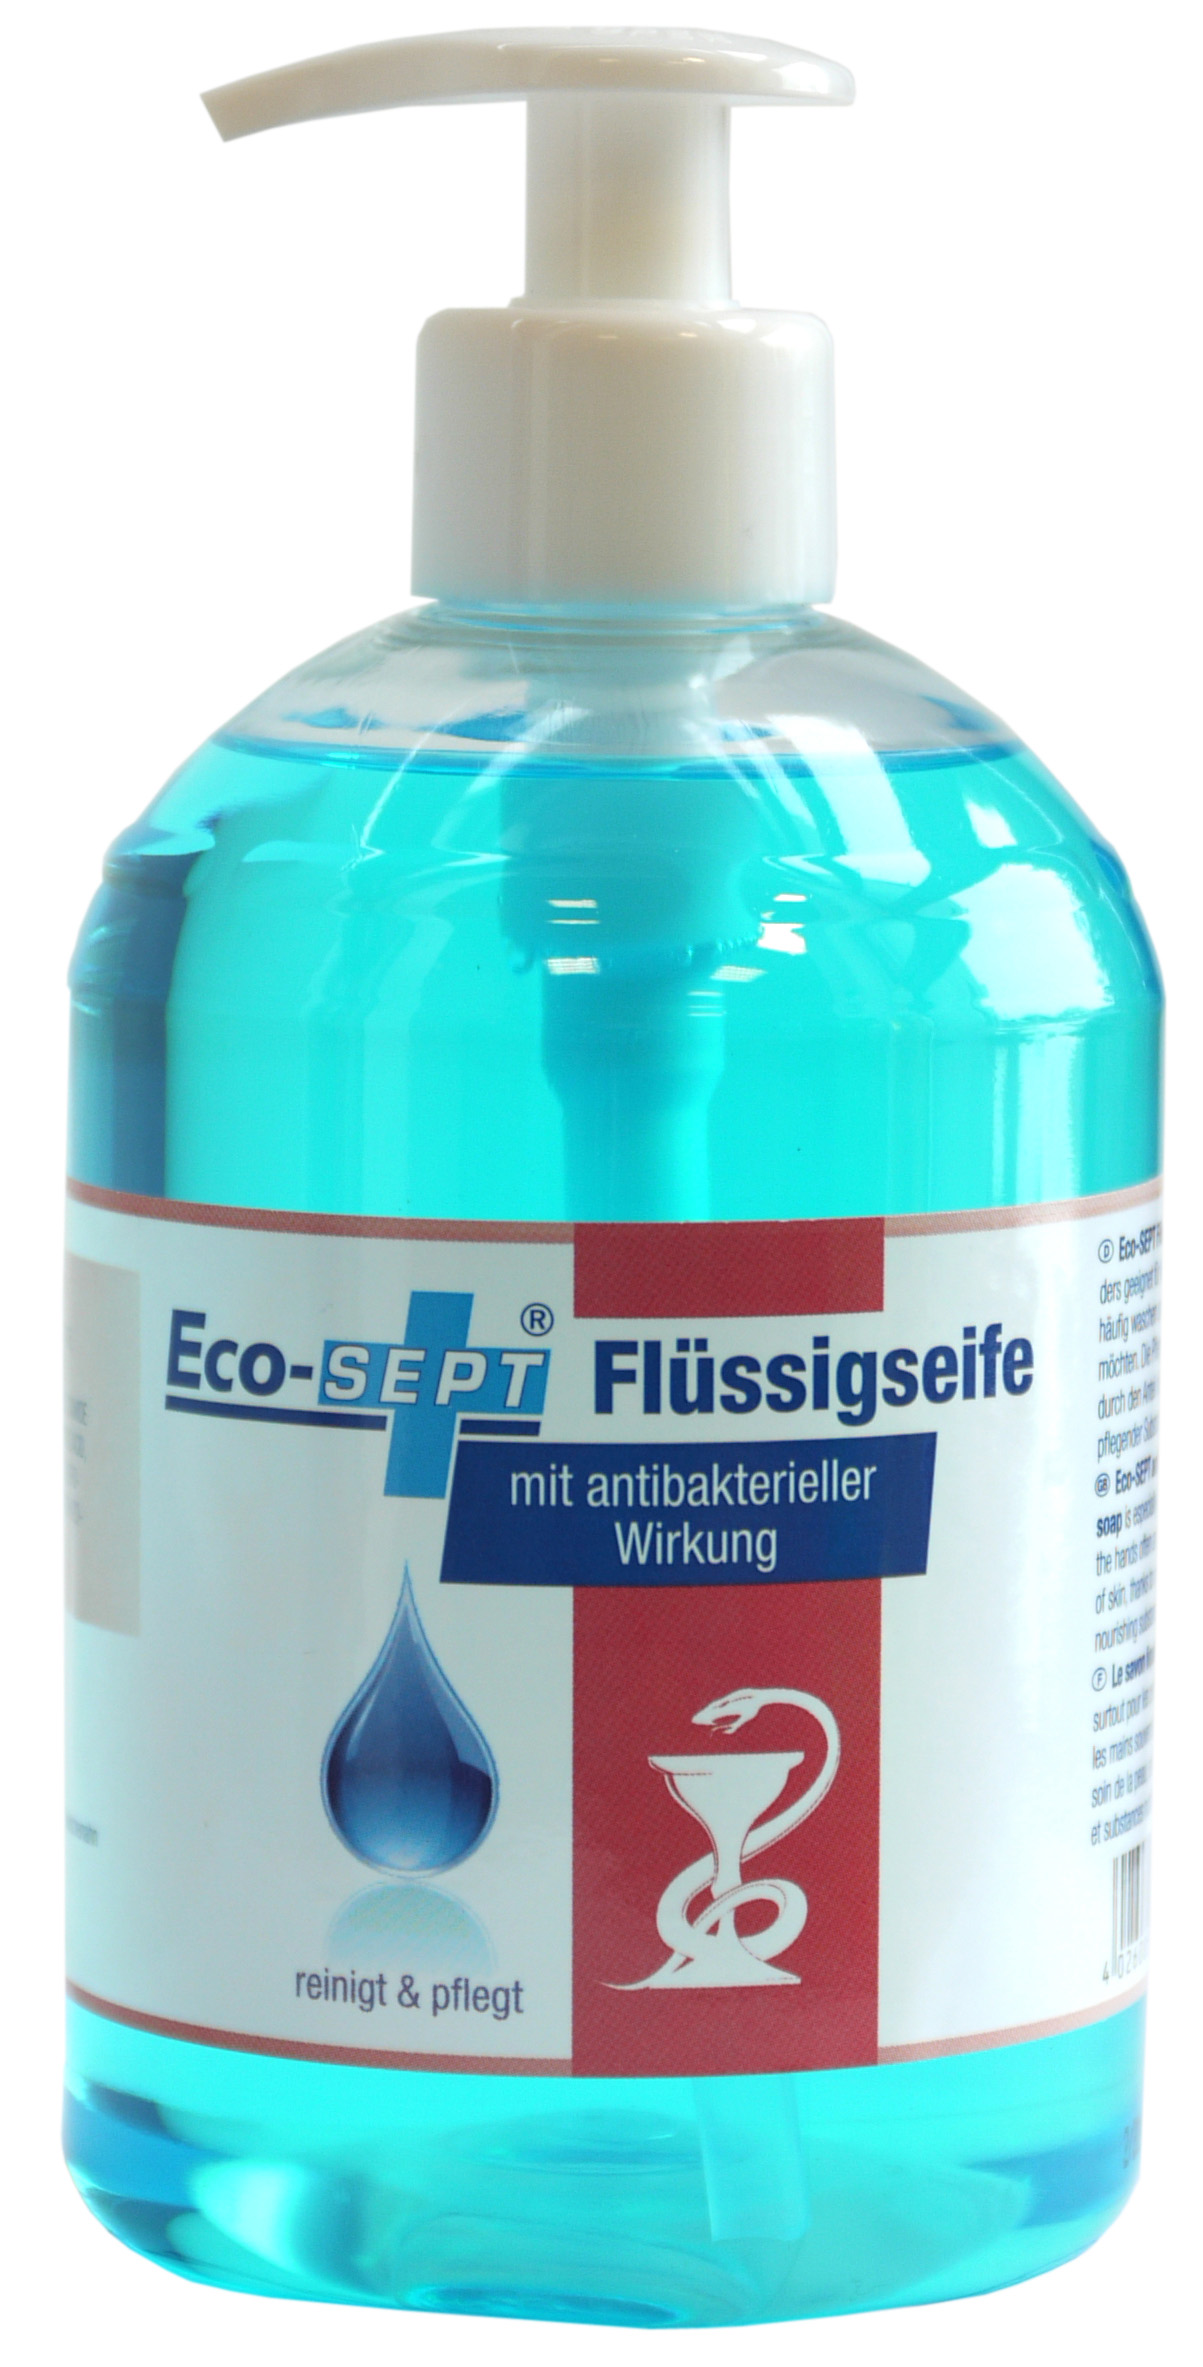 01610 - Eco-SEPT Flüssigseife 500 ml mit antibakterieller Wirkung